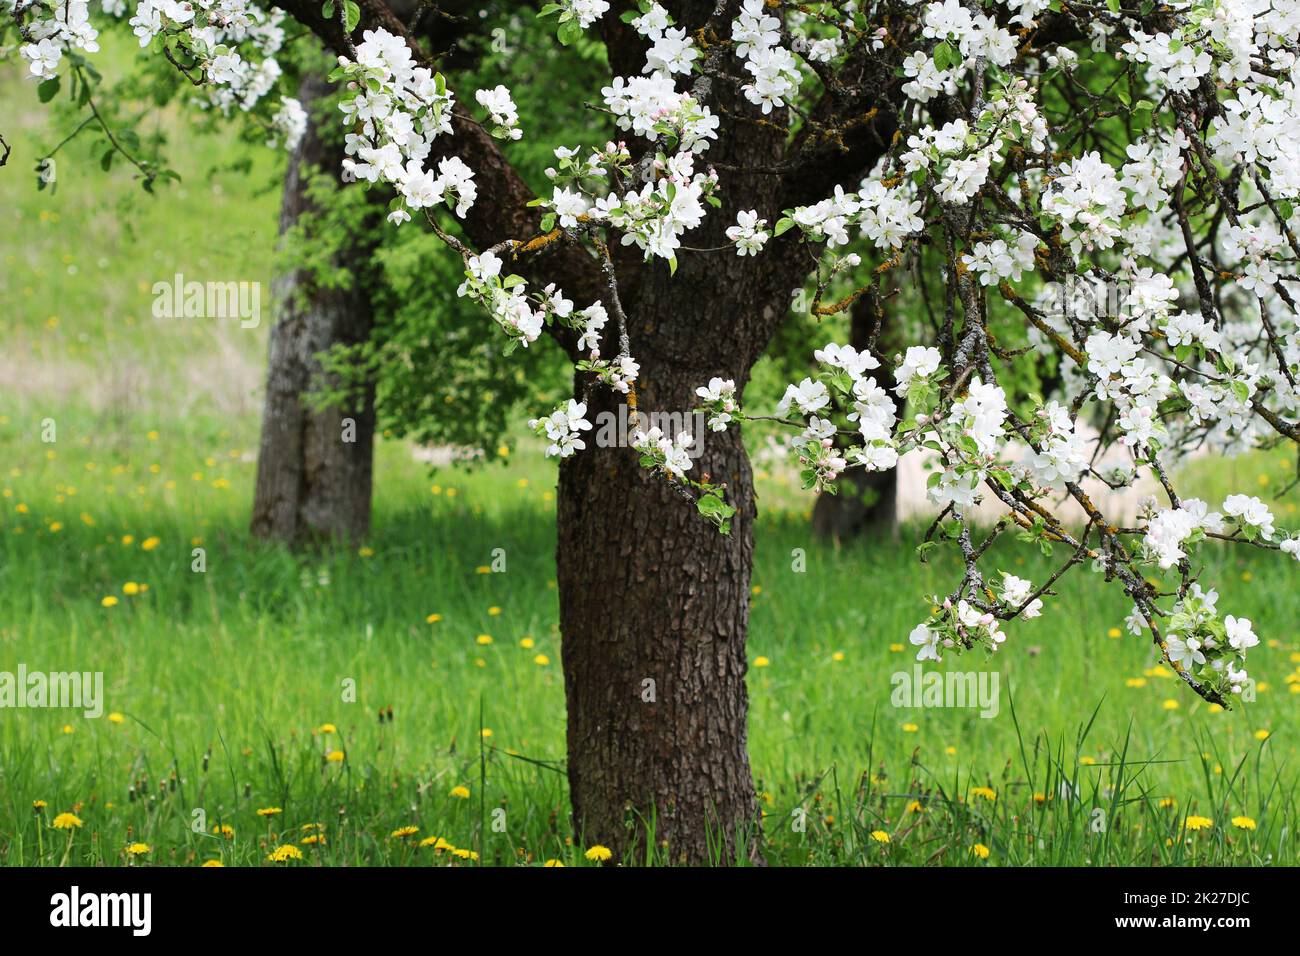 Spring Blossom Hintergrund. Schöne Natur mit blühenden Baum Szene. von Apple. Stockfoto